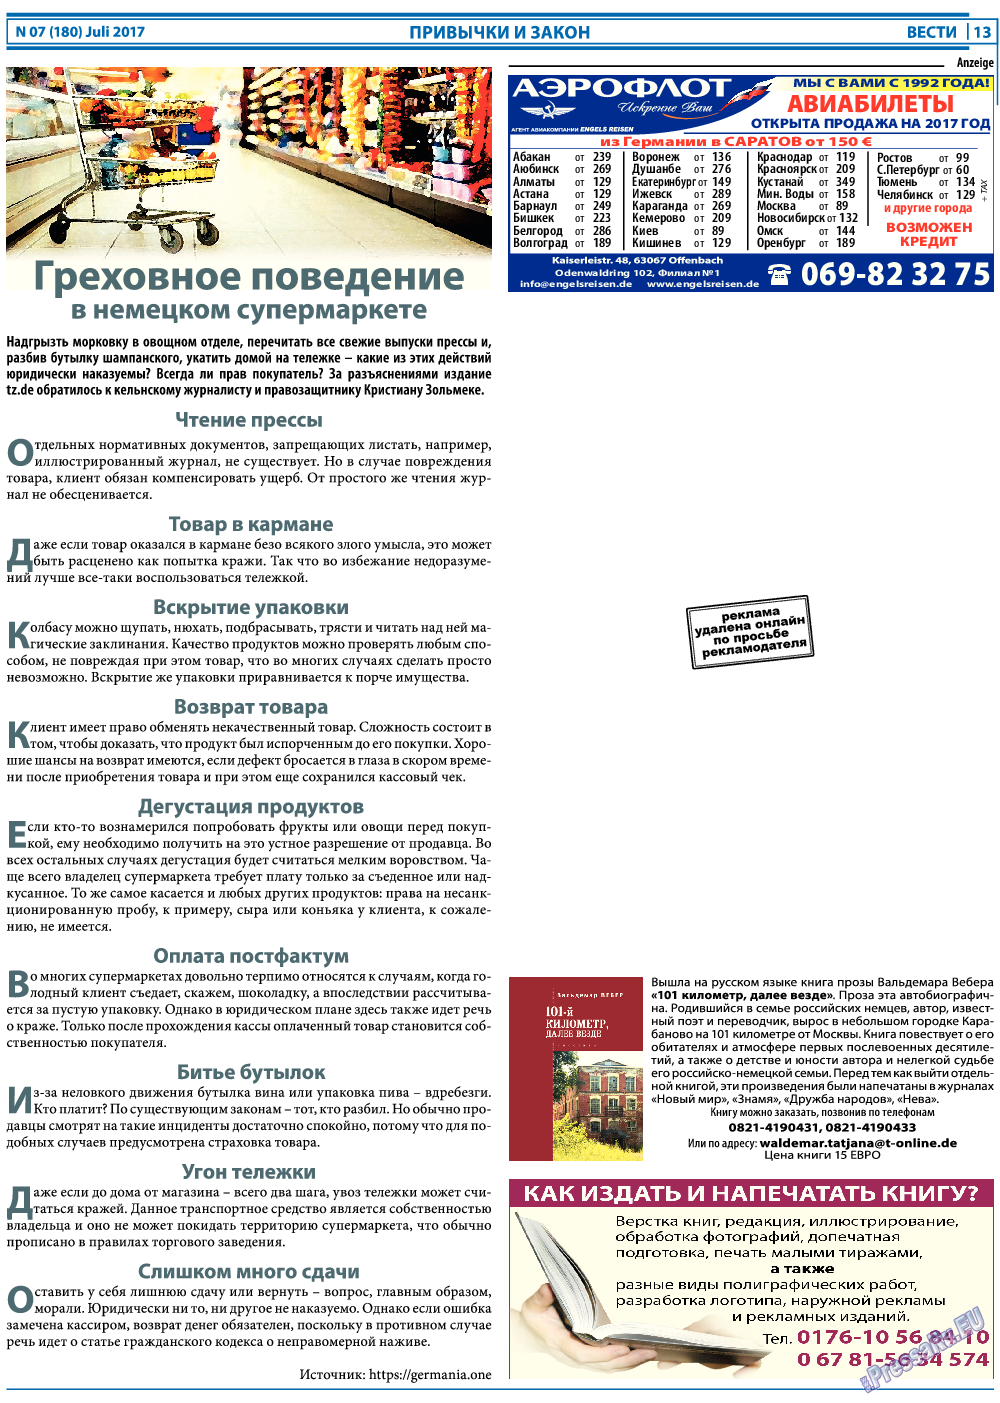 Вести, газета. 2017 №7 стр.13